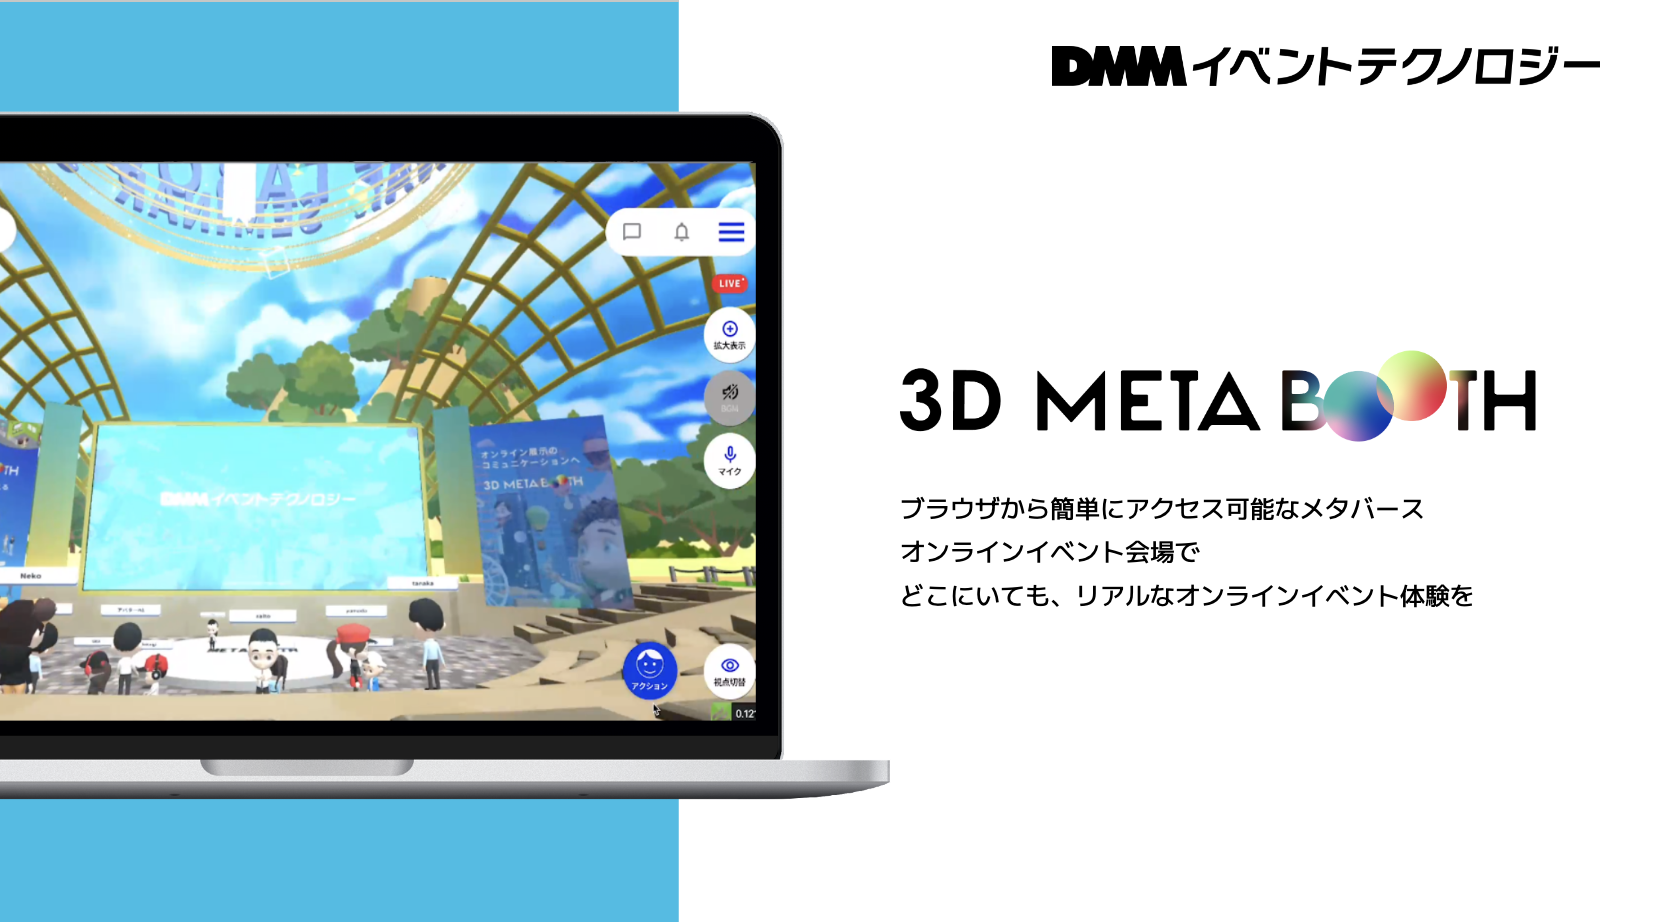 【3D META BOOTH】オンラインイベントプラットフォームにアバター同士で会話ができるメタバース機能を追加